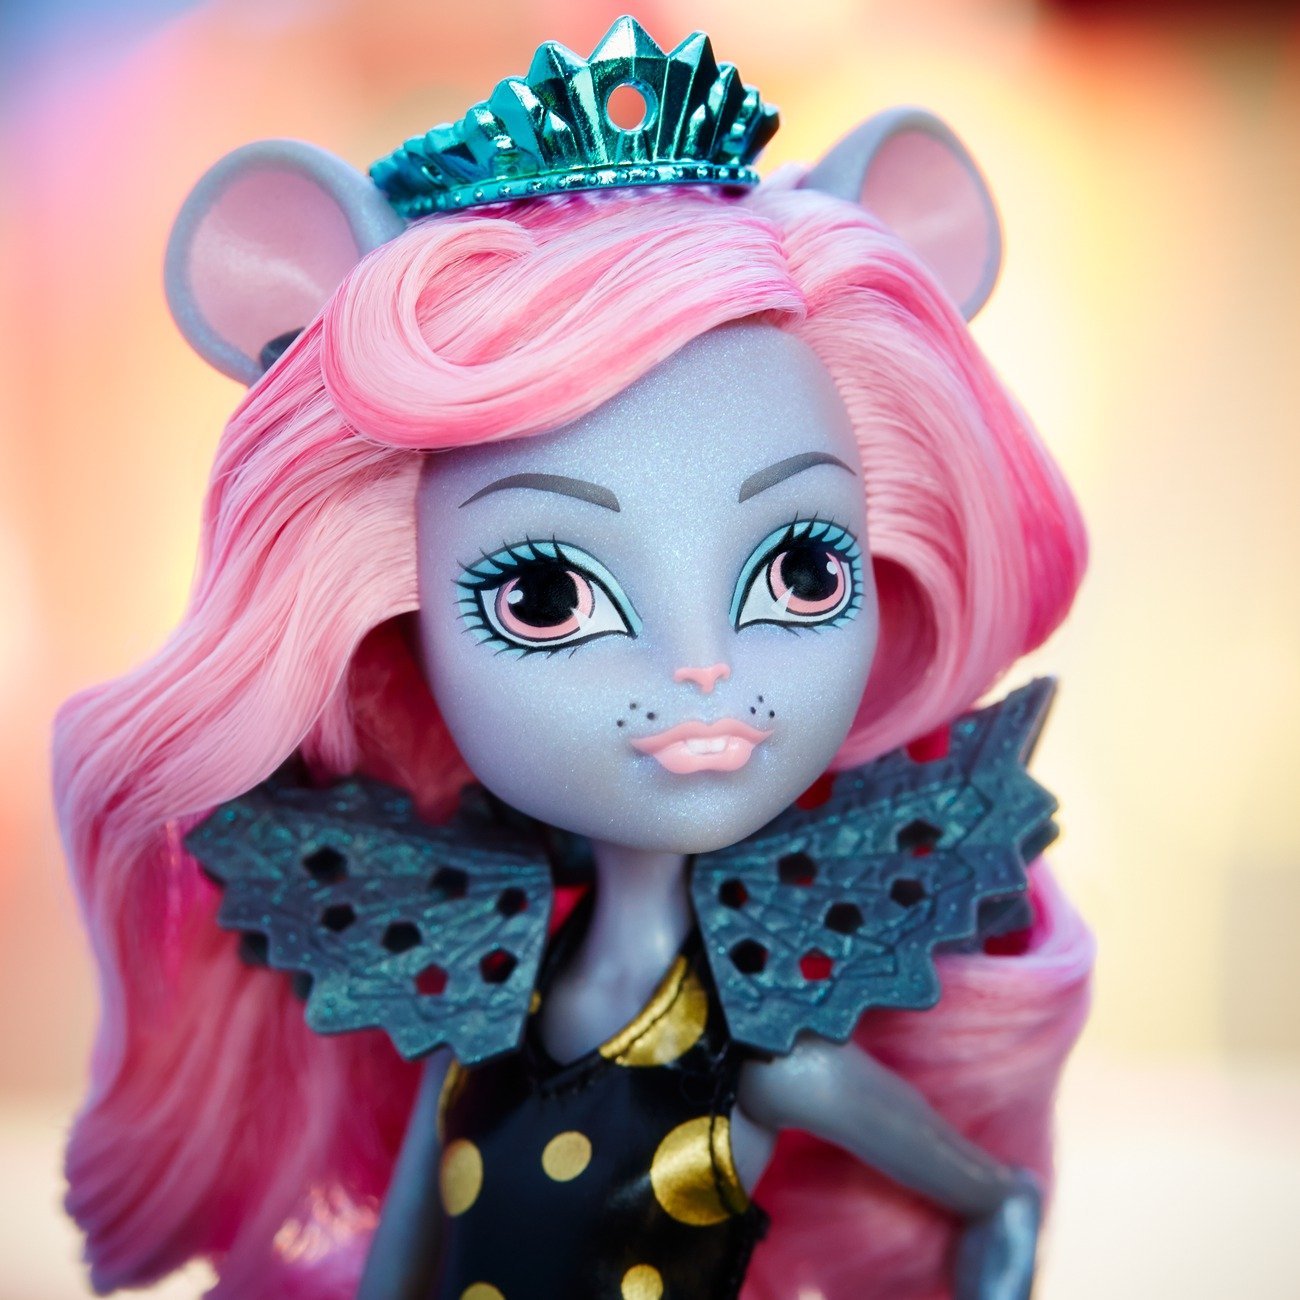 Кукла из серии Monster High Boo York, Boo York - Мауседес Кинг  